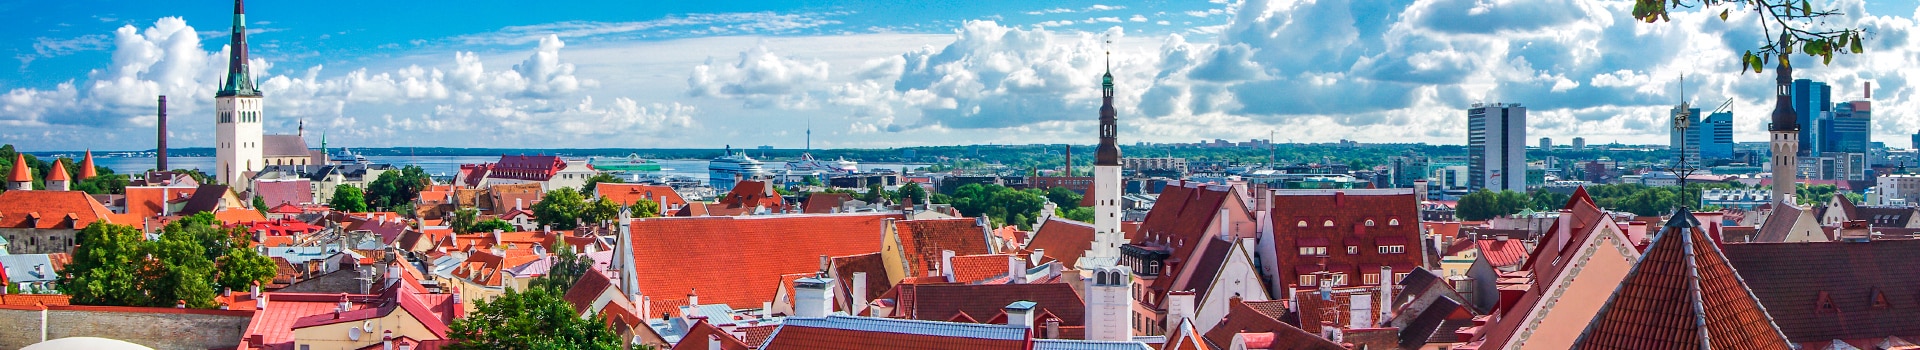 Goteborg - Tallinn